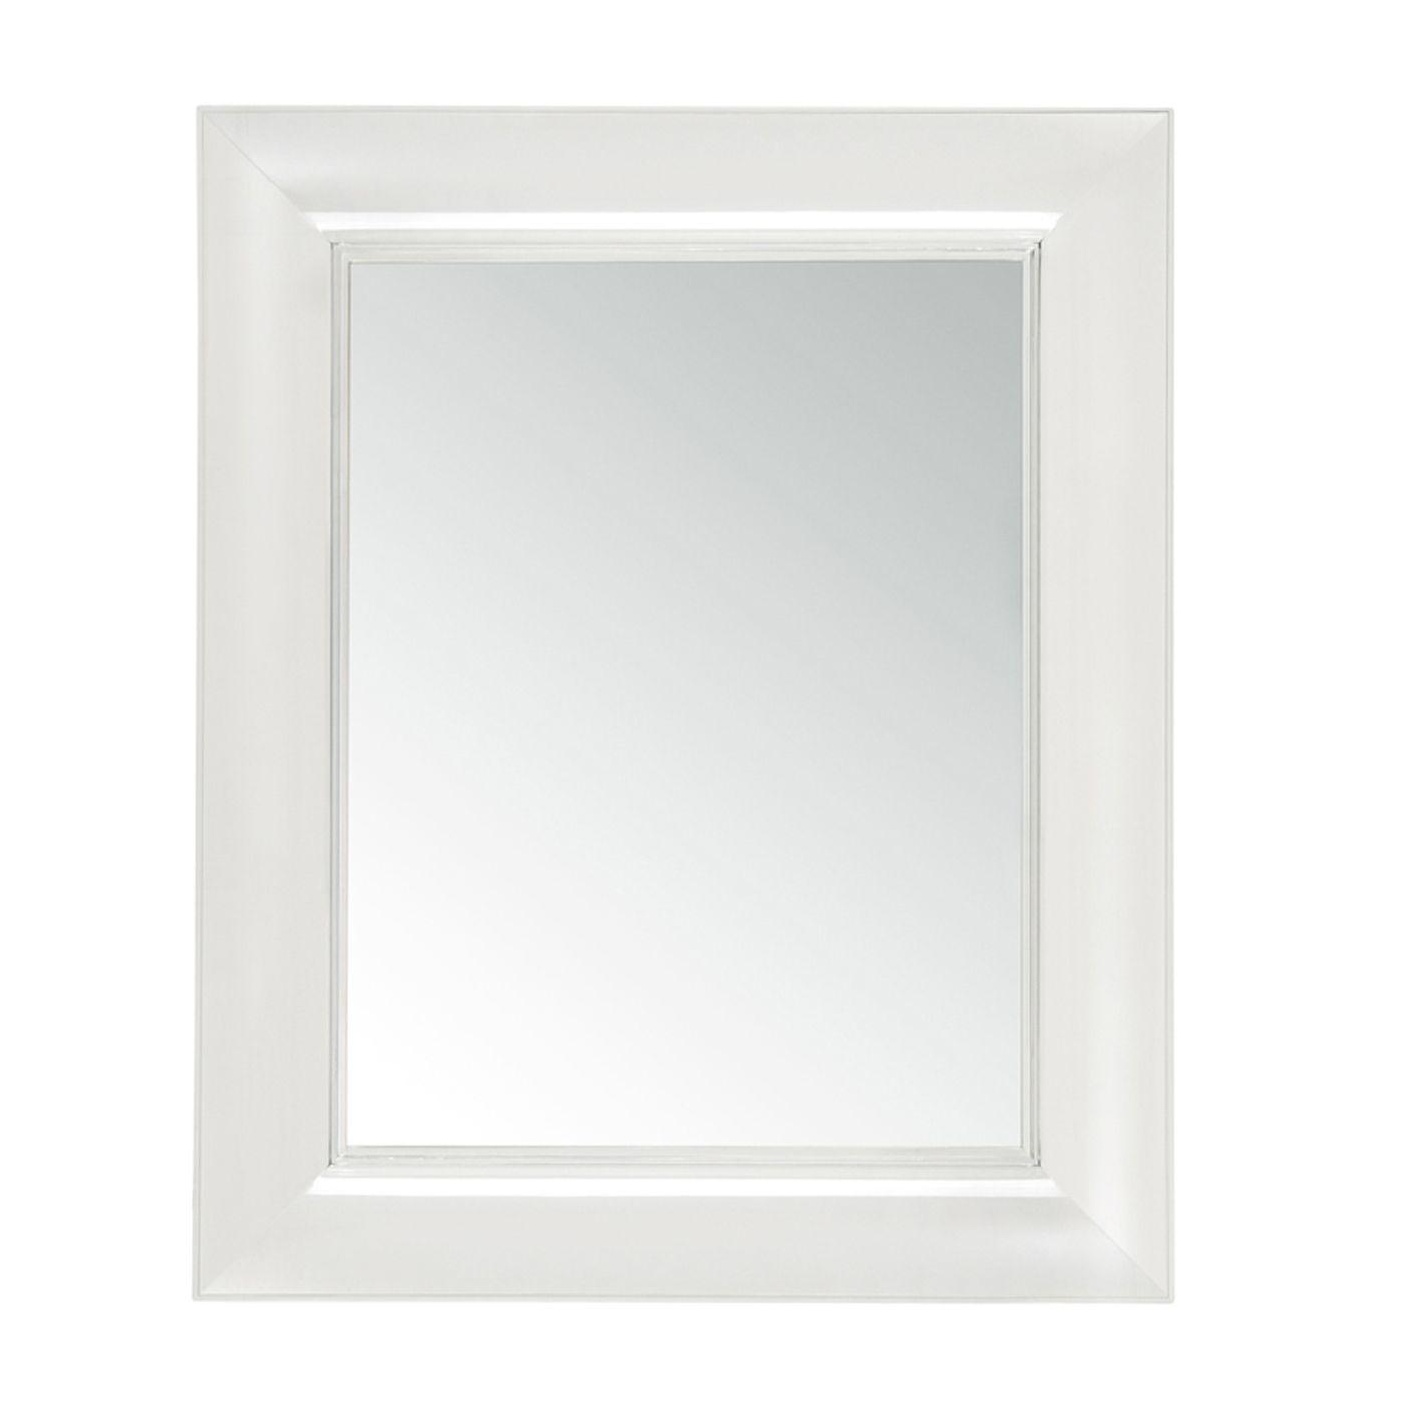 Kartell - Francois Ghost Spiegel - glasklar/transparent/65 x 79 x 5,7cm von Kartell